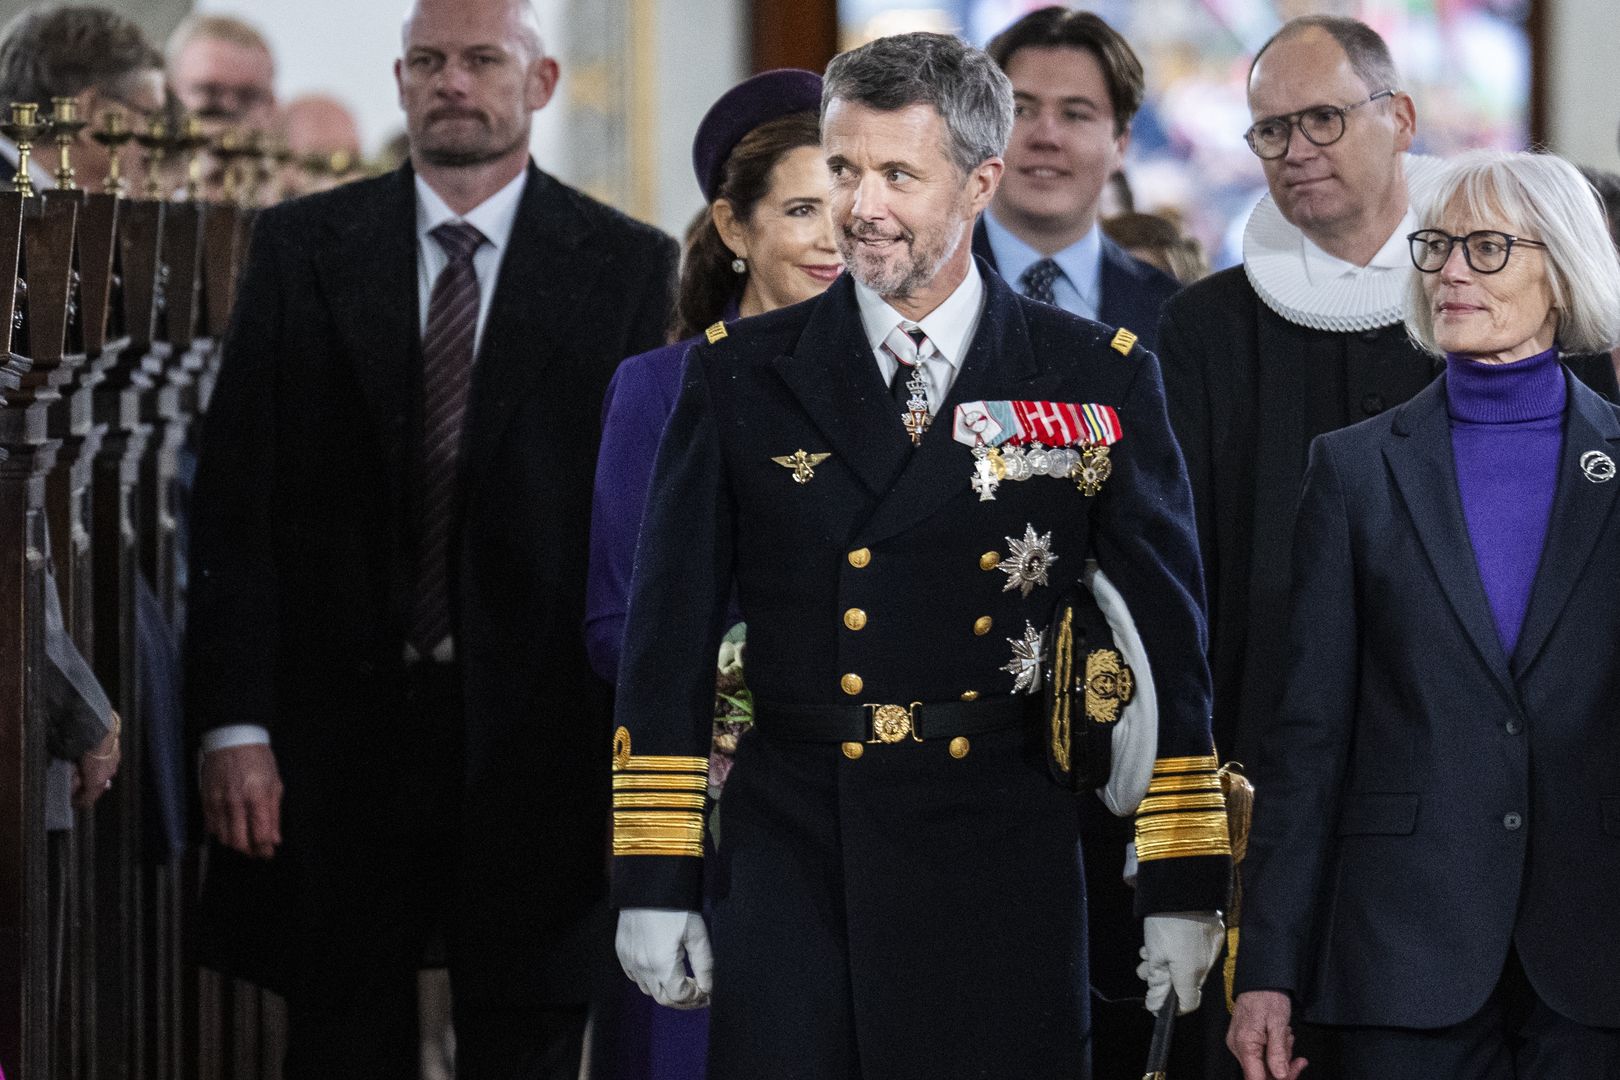 Nowy król Danii zaplanował swoją pierwszą wizytę. Kierunek: Polska